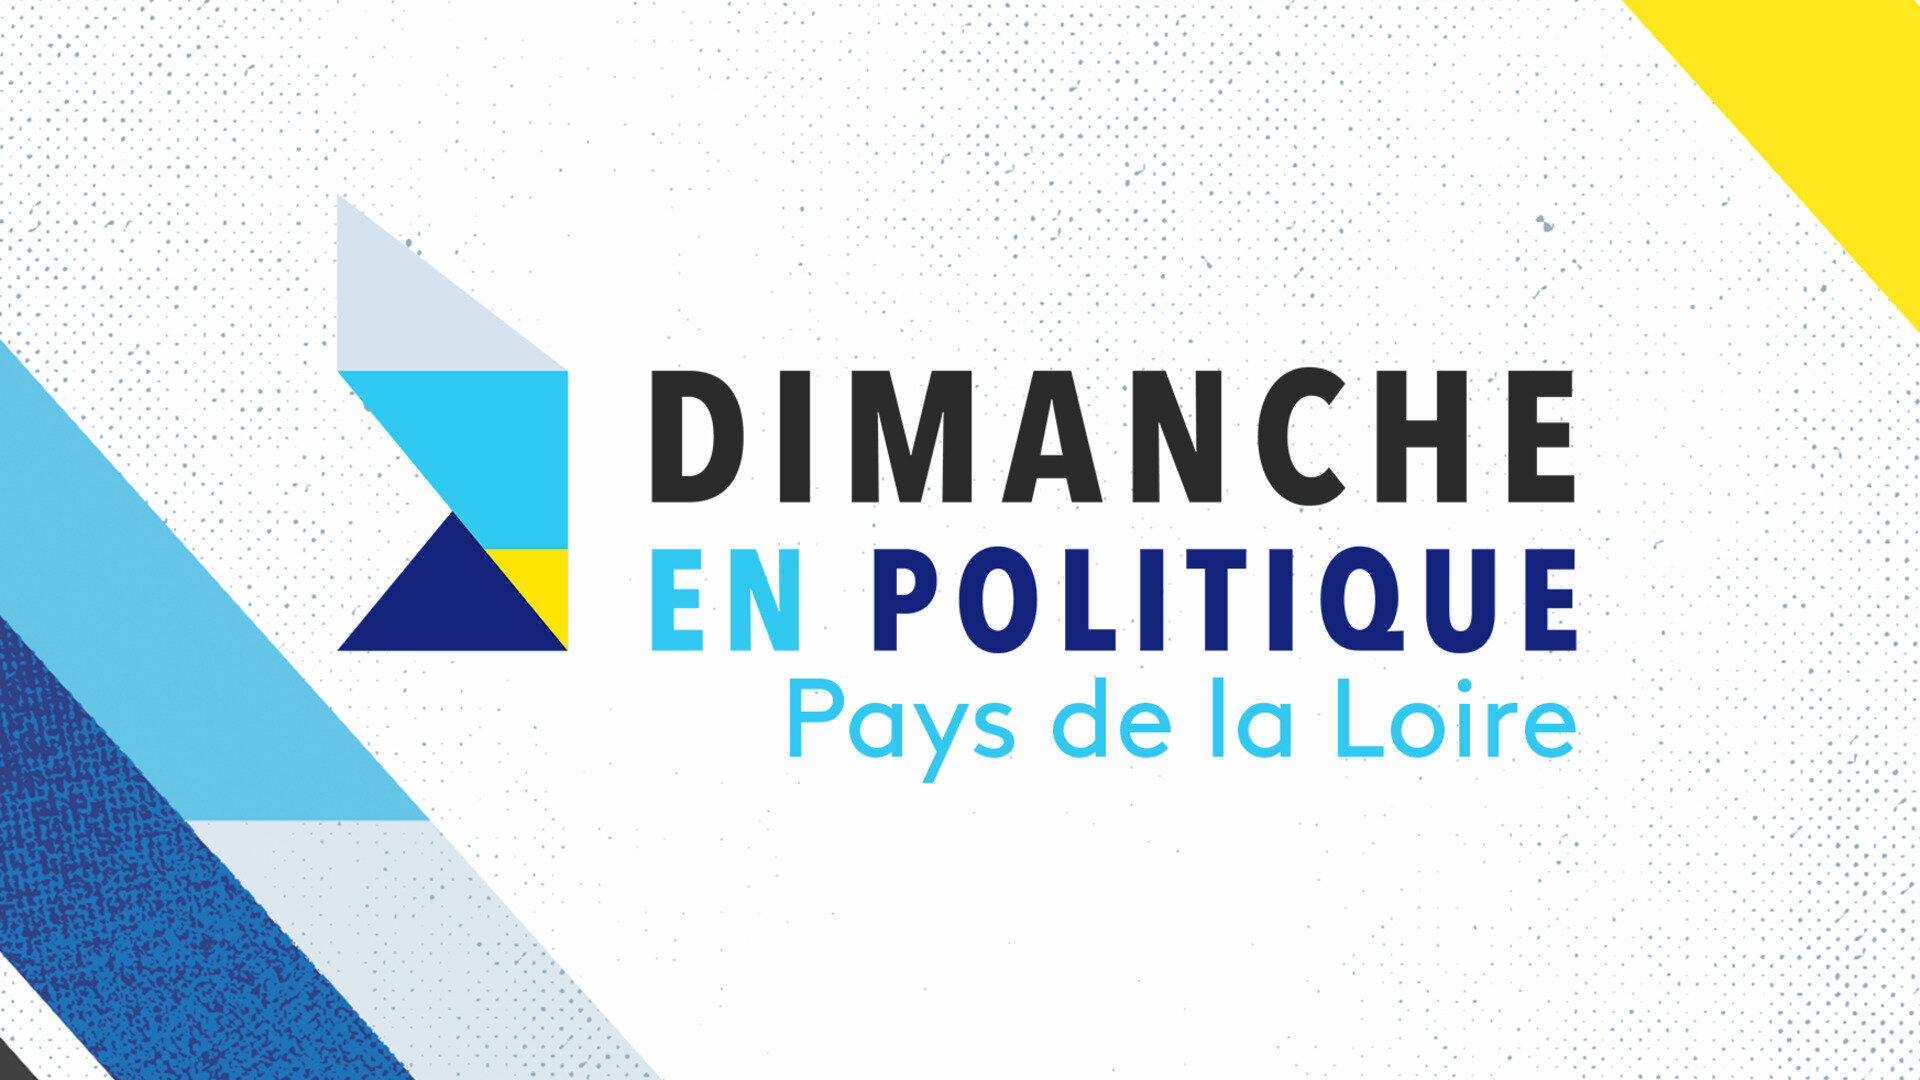 Dimanche en politique - Pays de la Loire